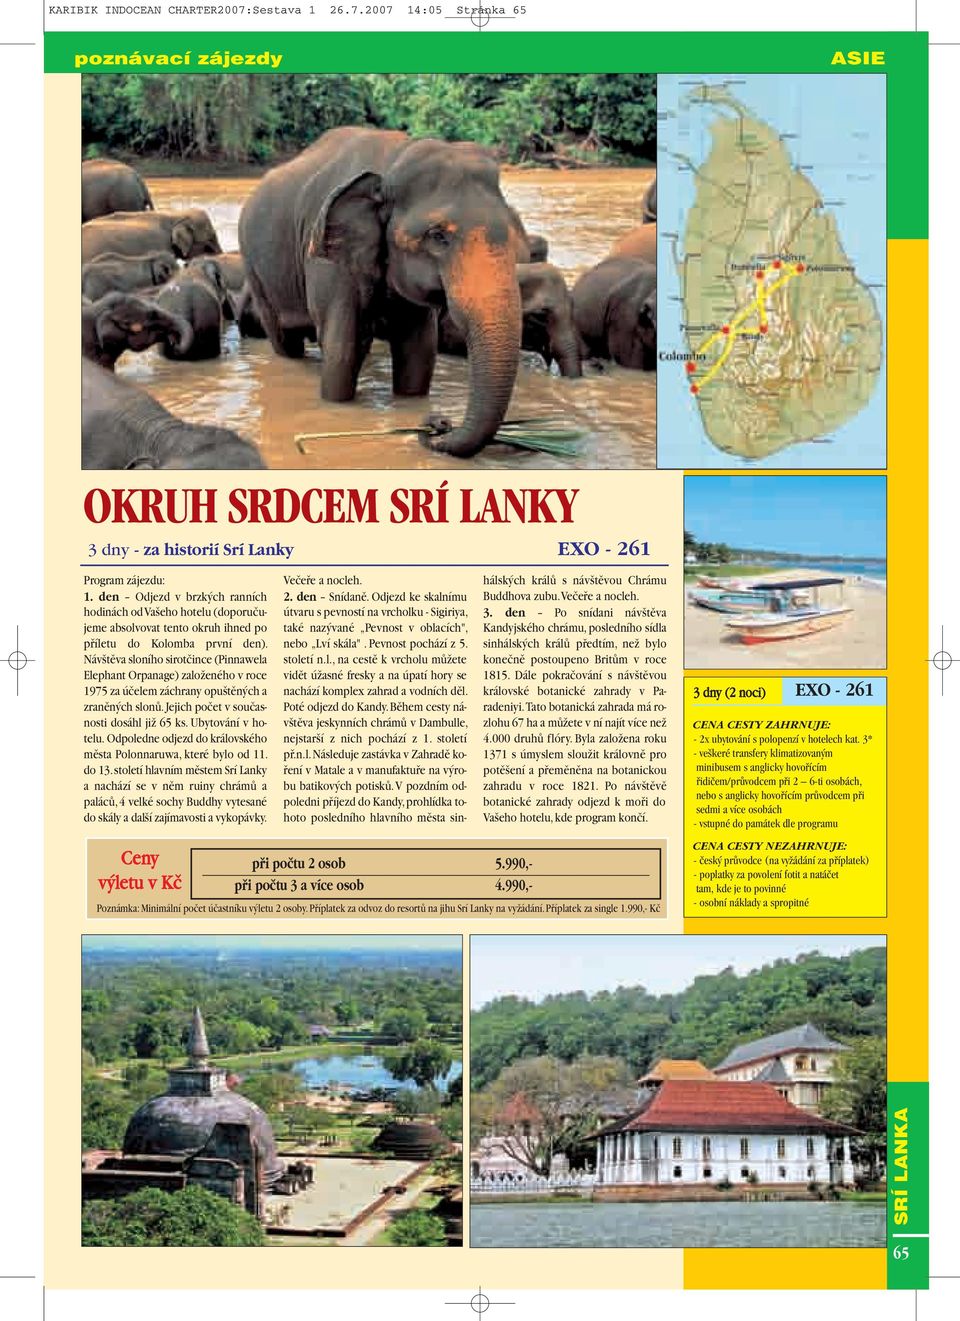 Náv tûva sloního sirotãince (Pinnawela Elephant Orpanage) zaloïeného v roce 1975 za úãelem záchrany opu tûn ch a zranûn ch slonû.jejich poãet v souãasnosti dosáhl jiï 65 ks. Ubytování v hotelu.